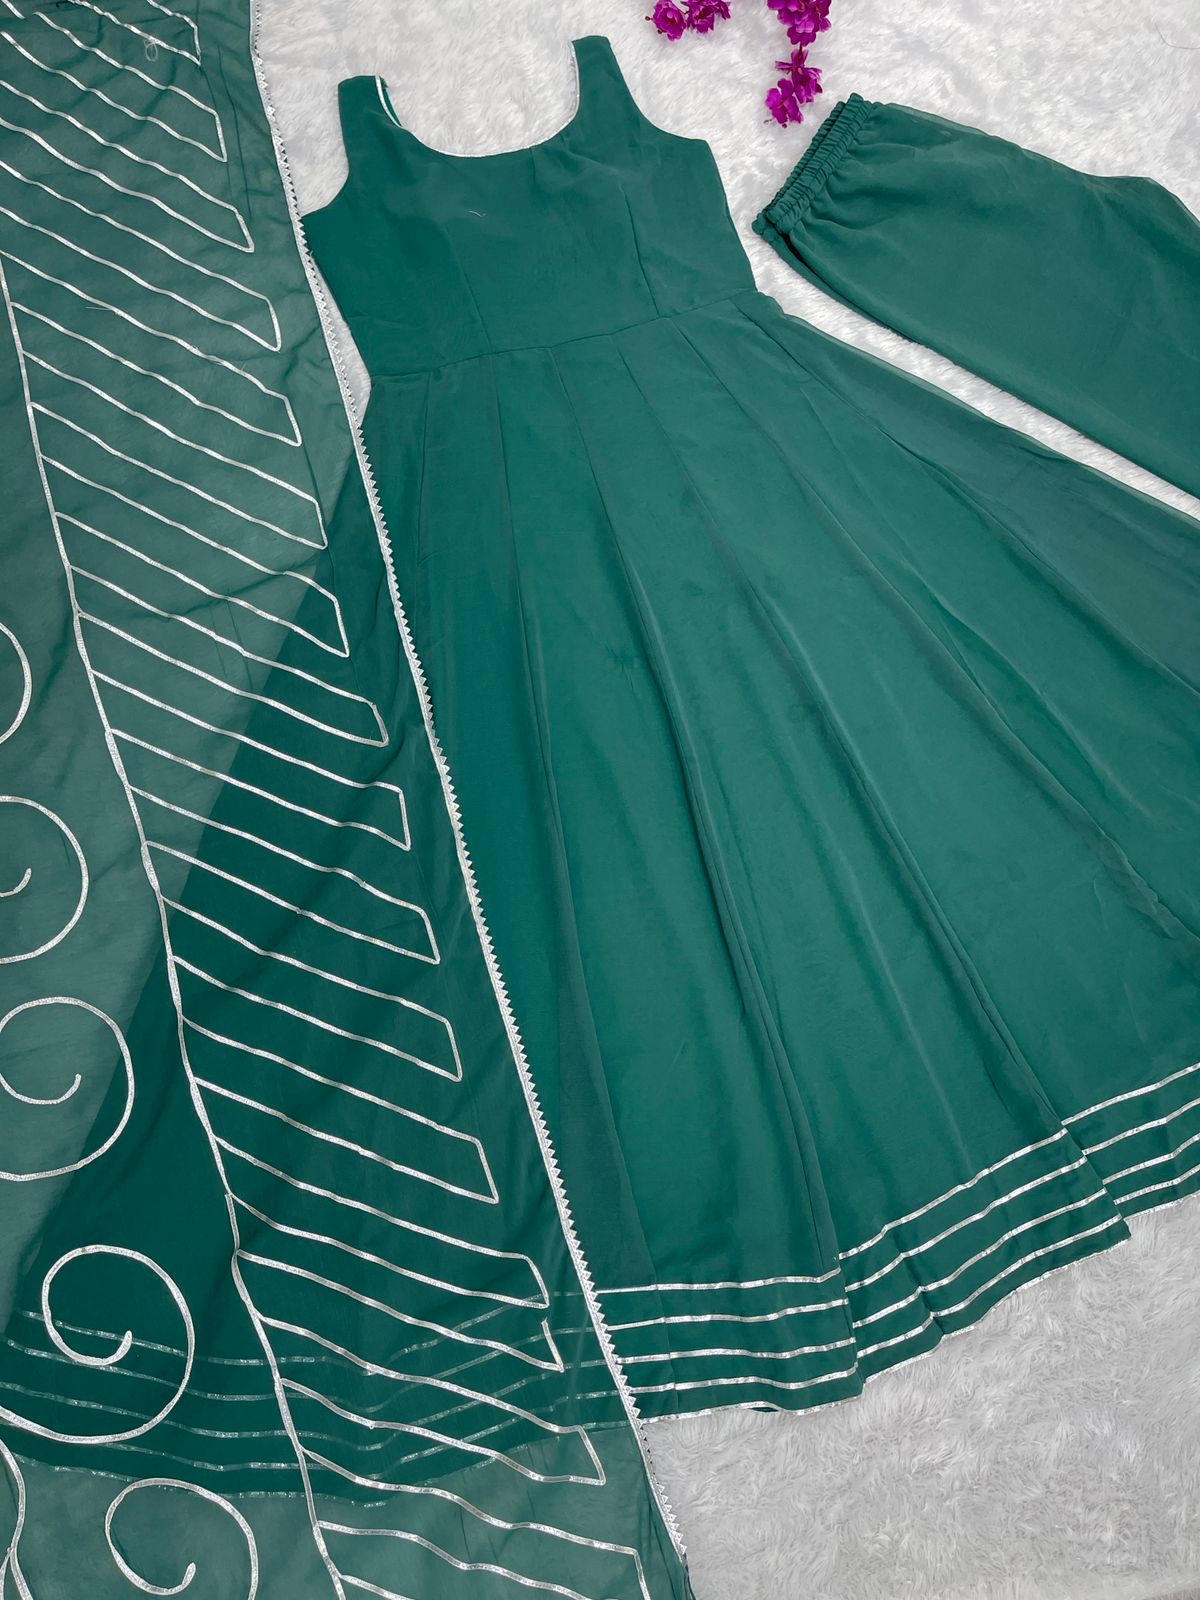 Gorgeous Gota Patti Work Teal Green Gown